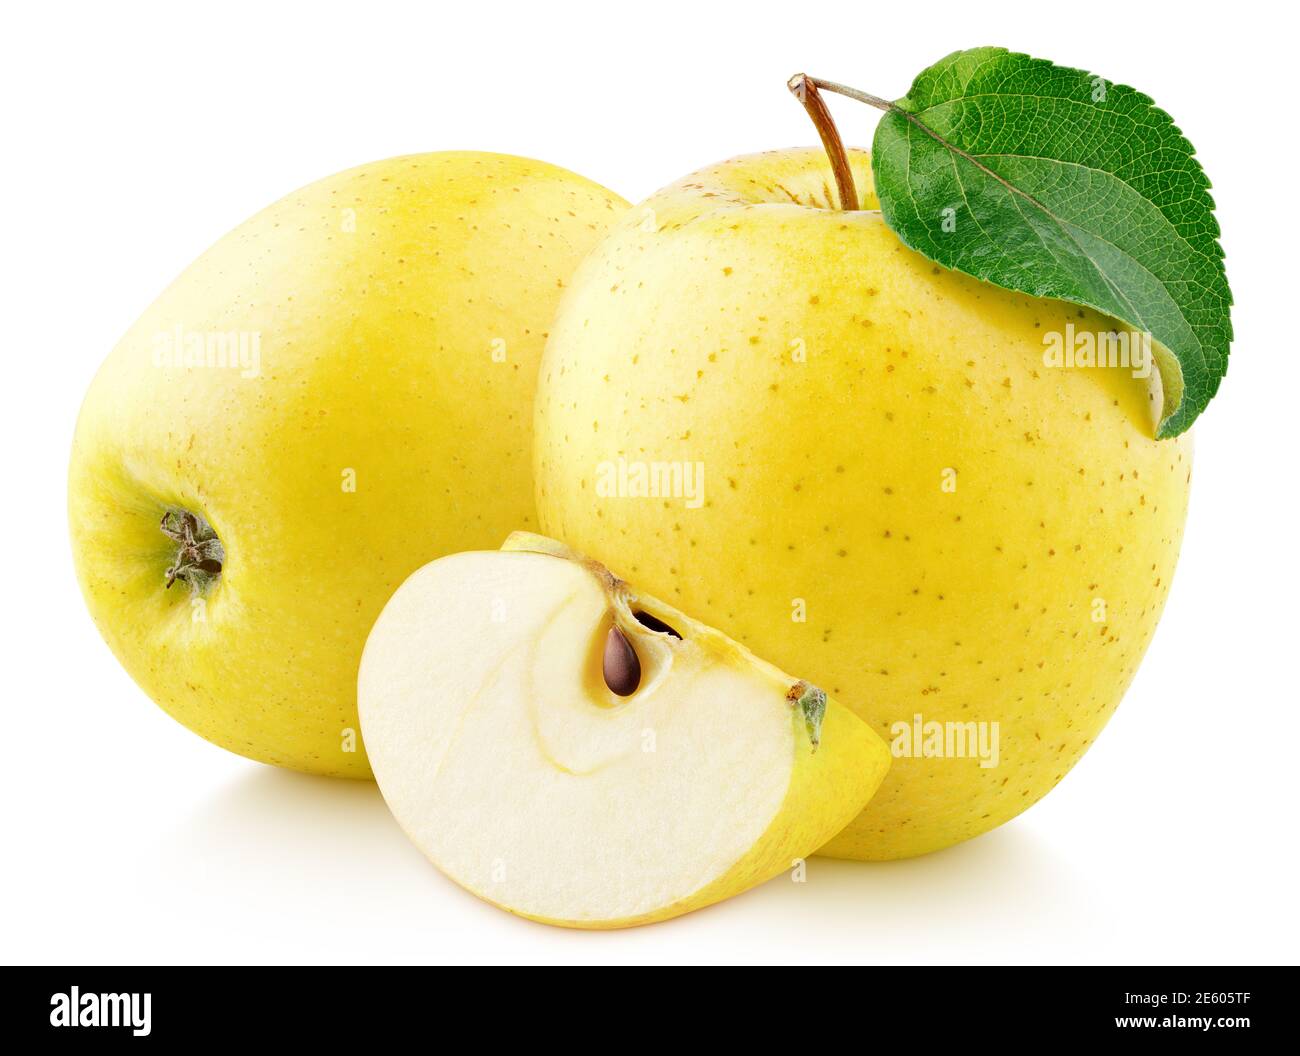 Gelbe Apfelfrucht mit grünem Blatt und Scheibe isoliert auf weißem Hintergrund. Goldener Apfel mit Schneideweg. Volle Schärfentiefe Stockfoto